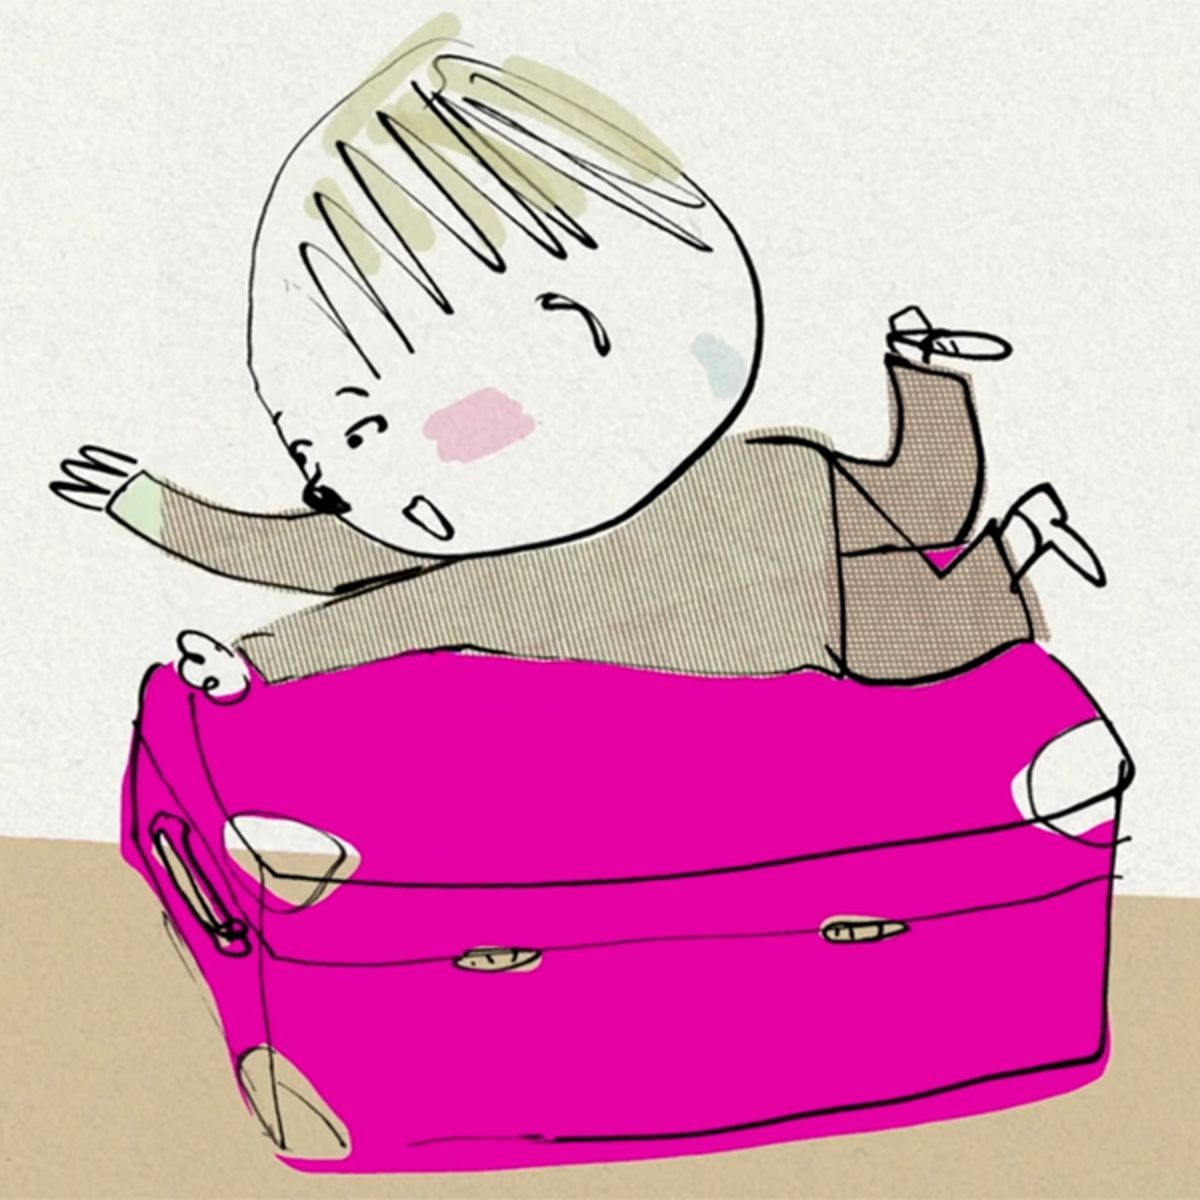 La valise rose | 